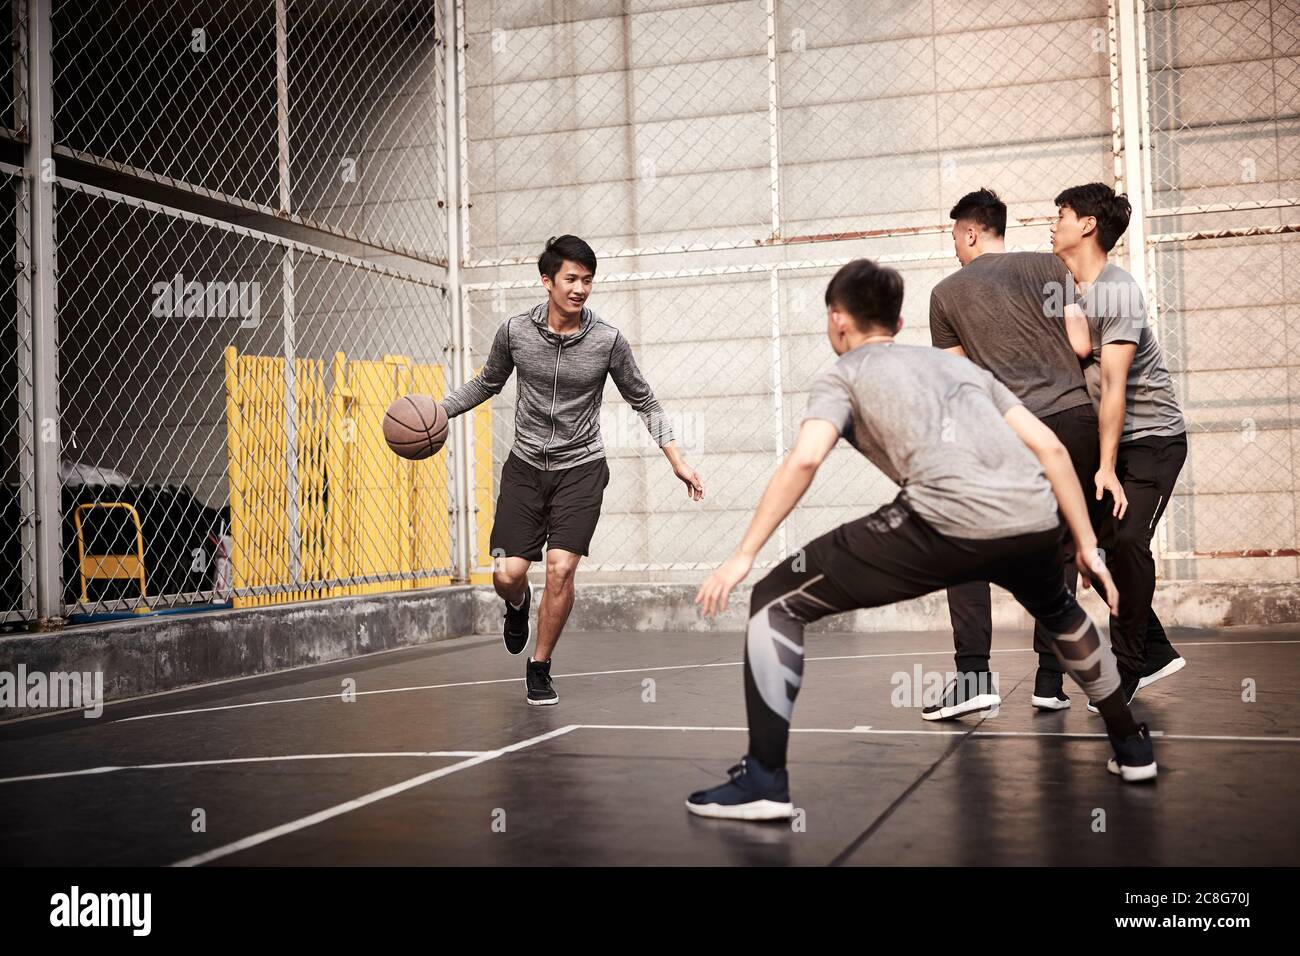 jeunes hommes adultes asiatiques jouant au basket-ball sur un terrain extérieur Banque D'Images